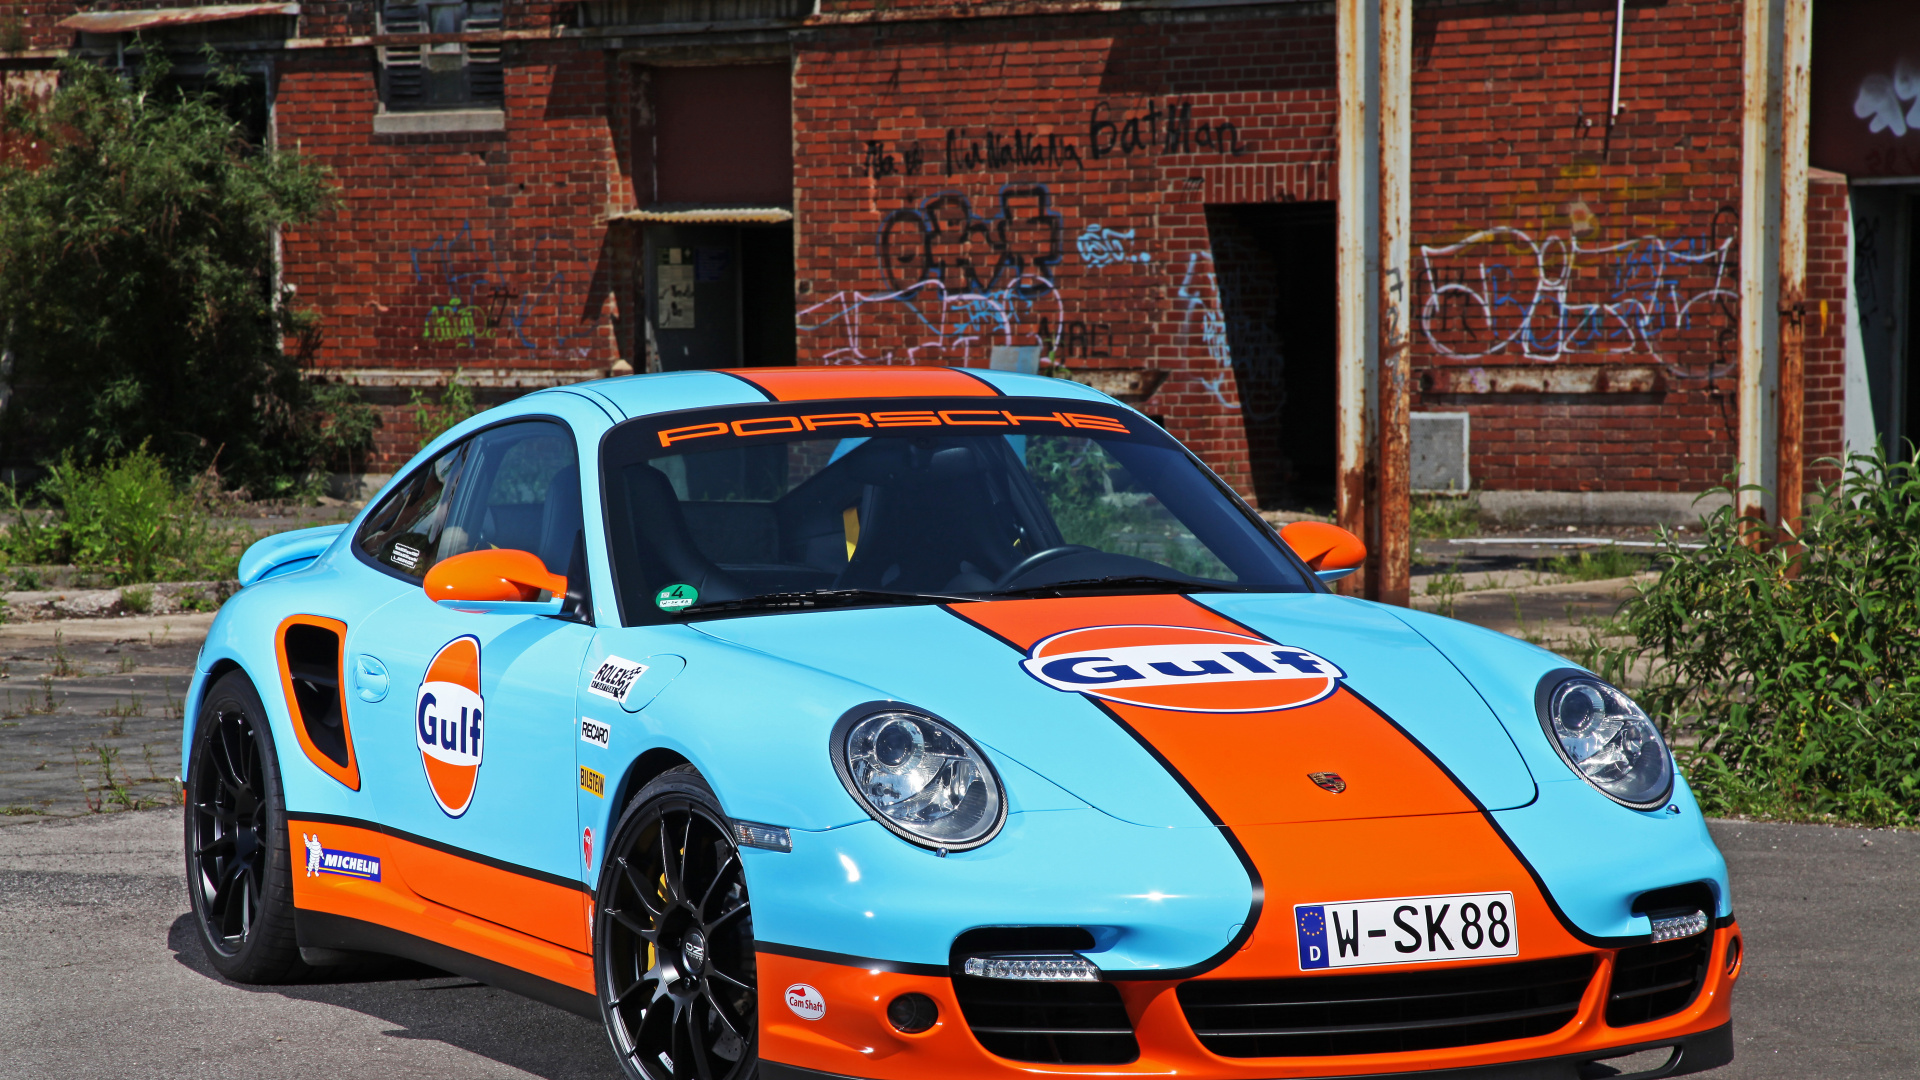 Porsche 911 Azul y Blanco Estacionado Cerca Del Edificio de Ladrillo Marrón Durante el Día. Wallpaper in 1920x1080 Resolution